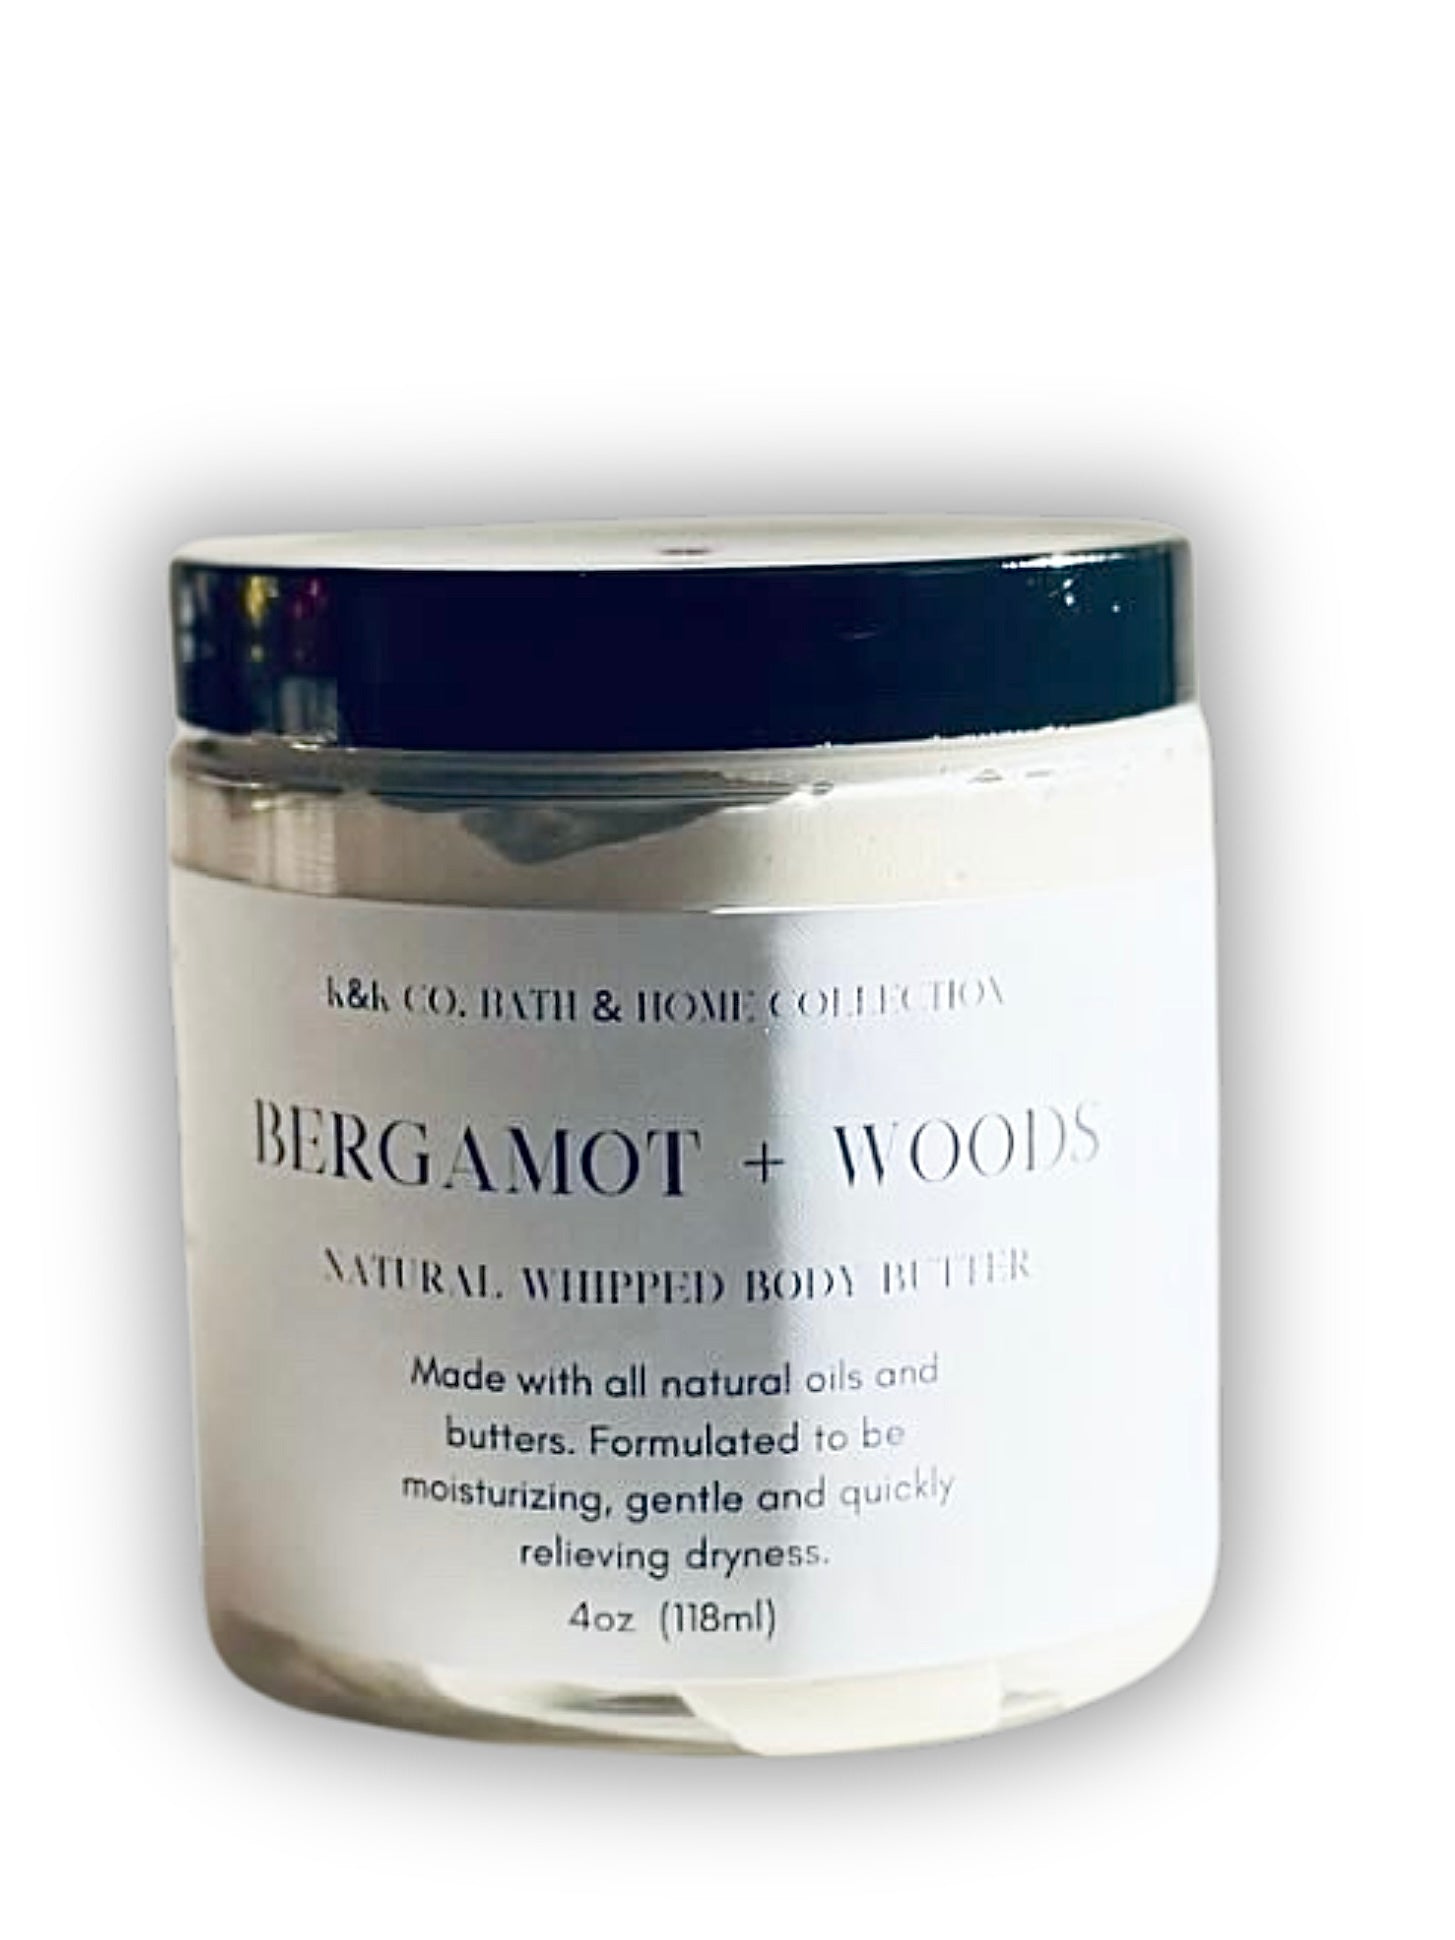 Bergamot + Woods Body Butter